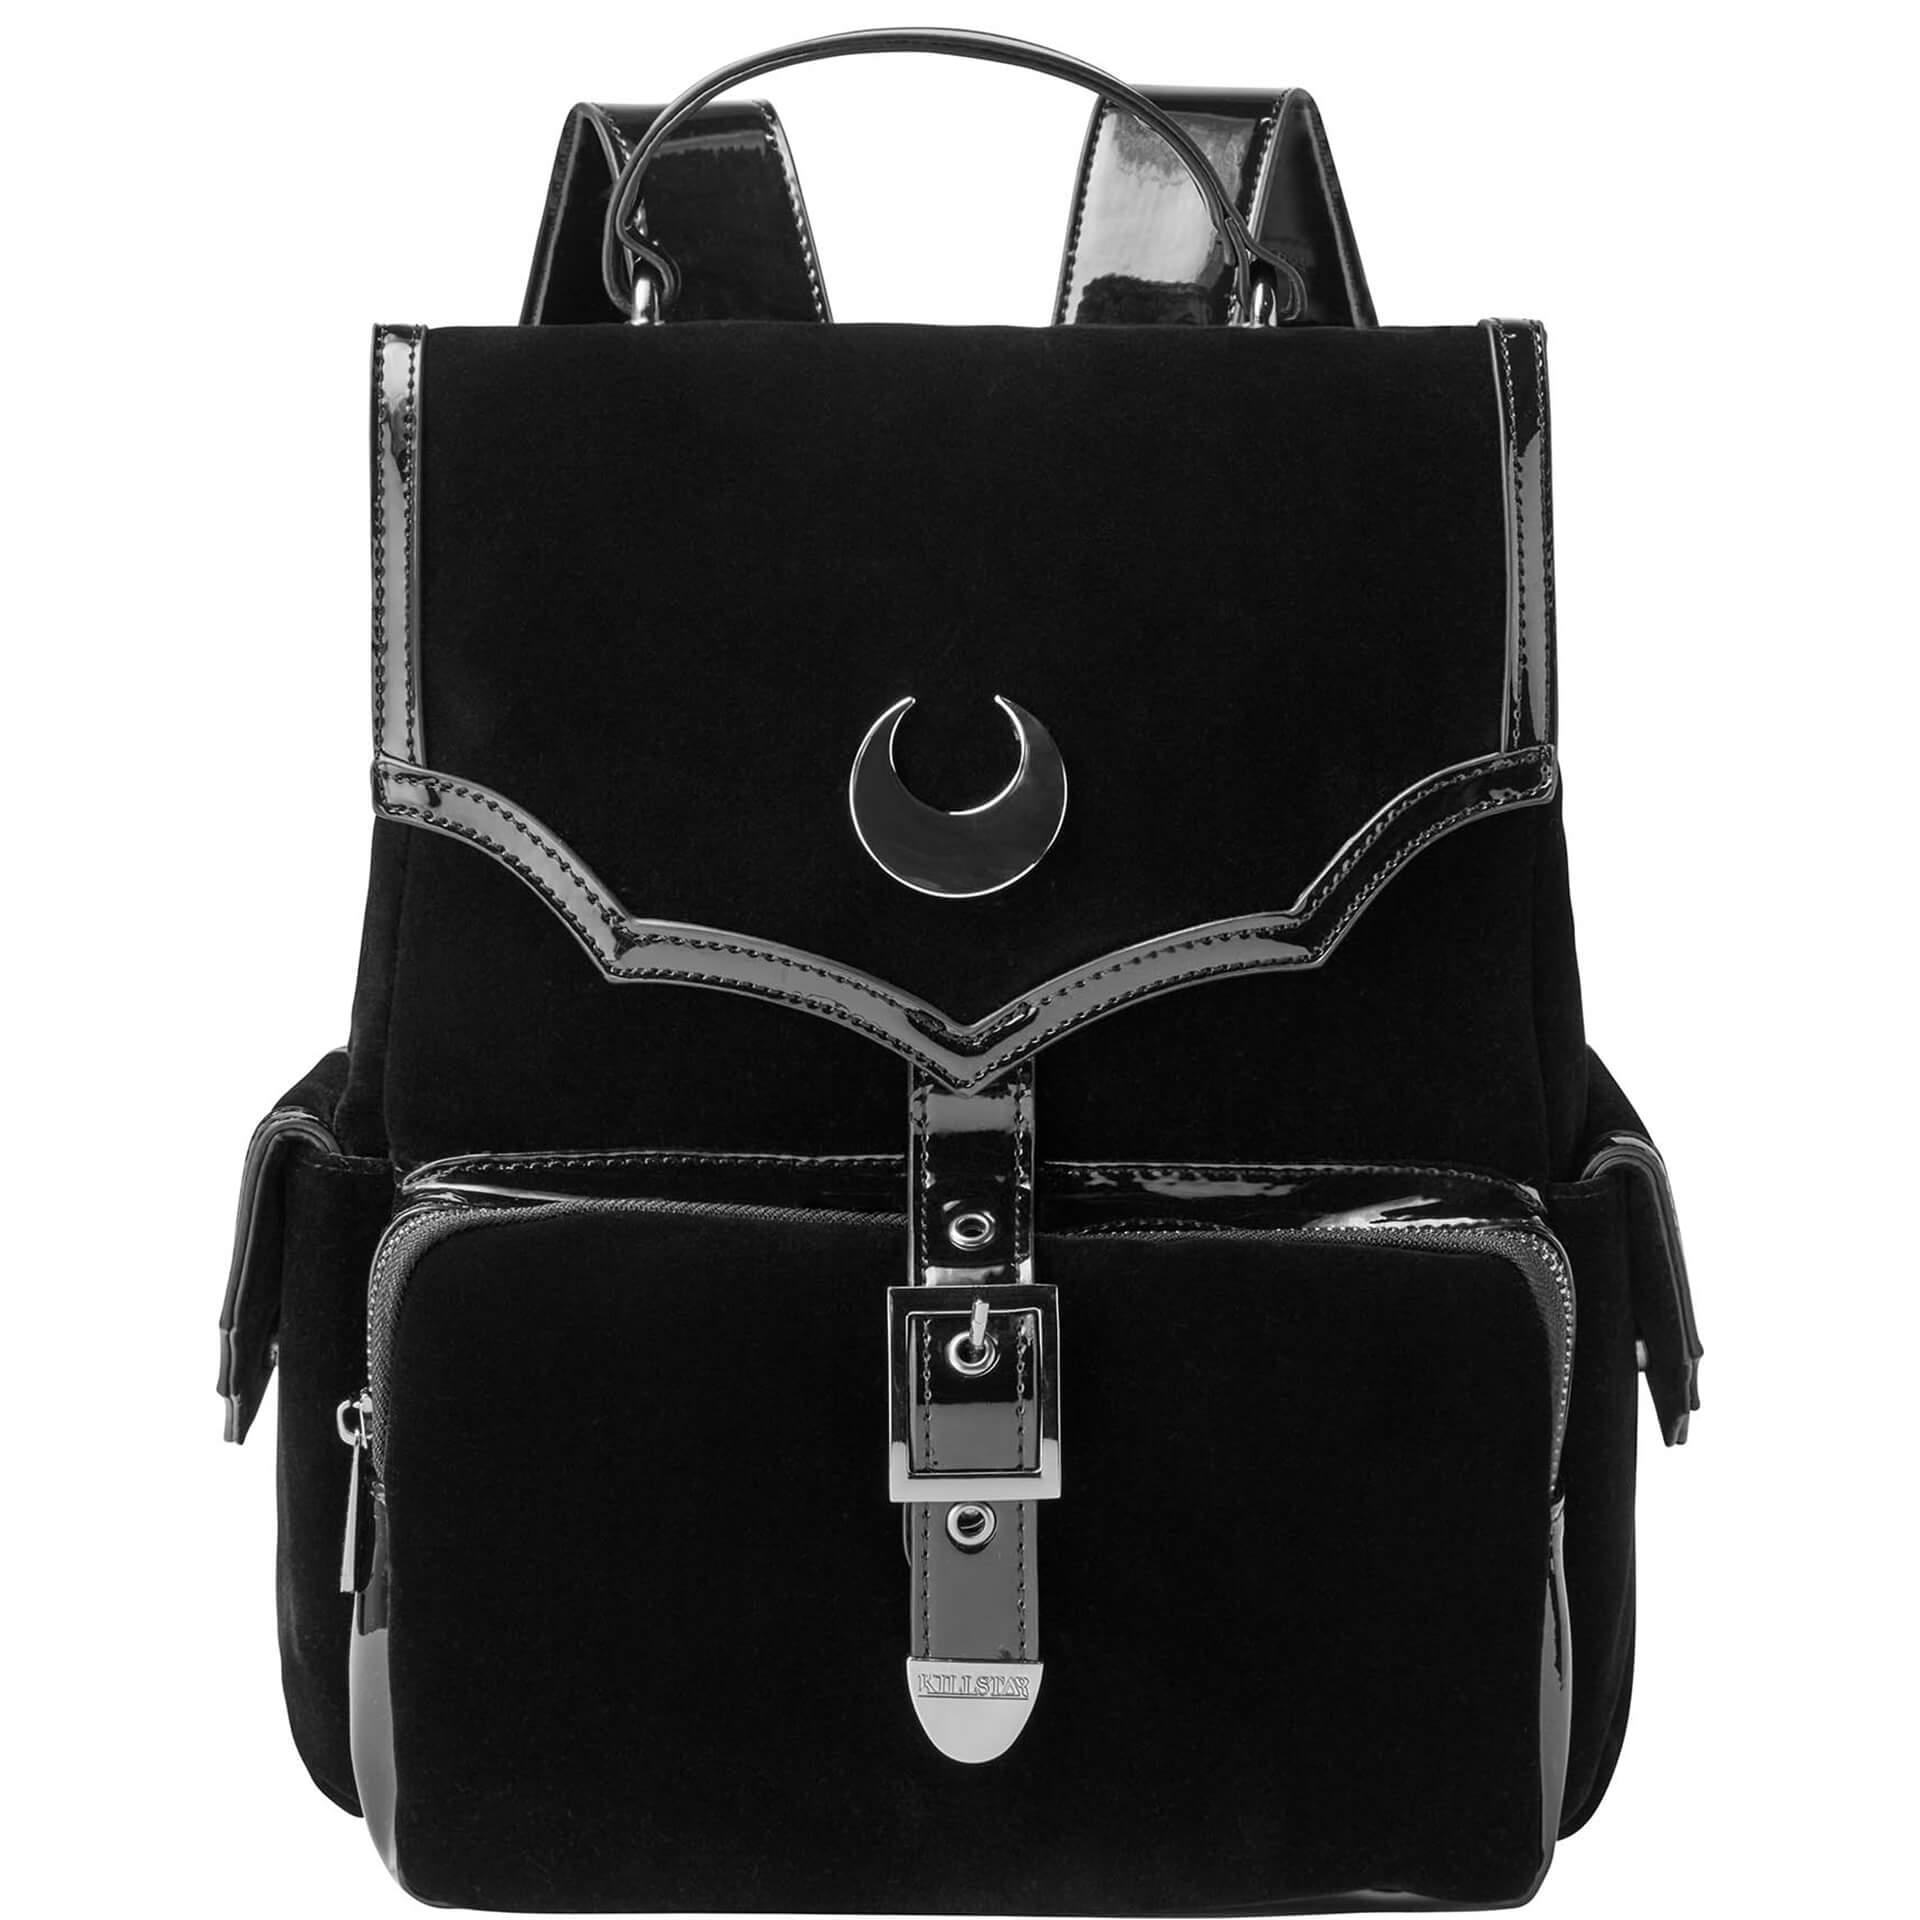 Nyah Backpack KSRA001191 by KILLSTAR brand